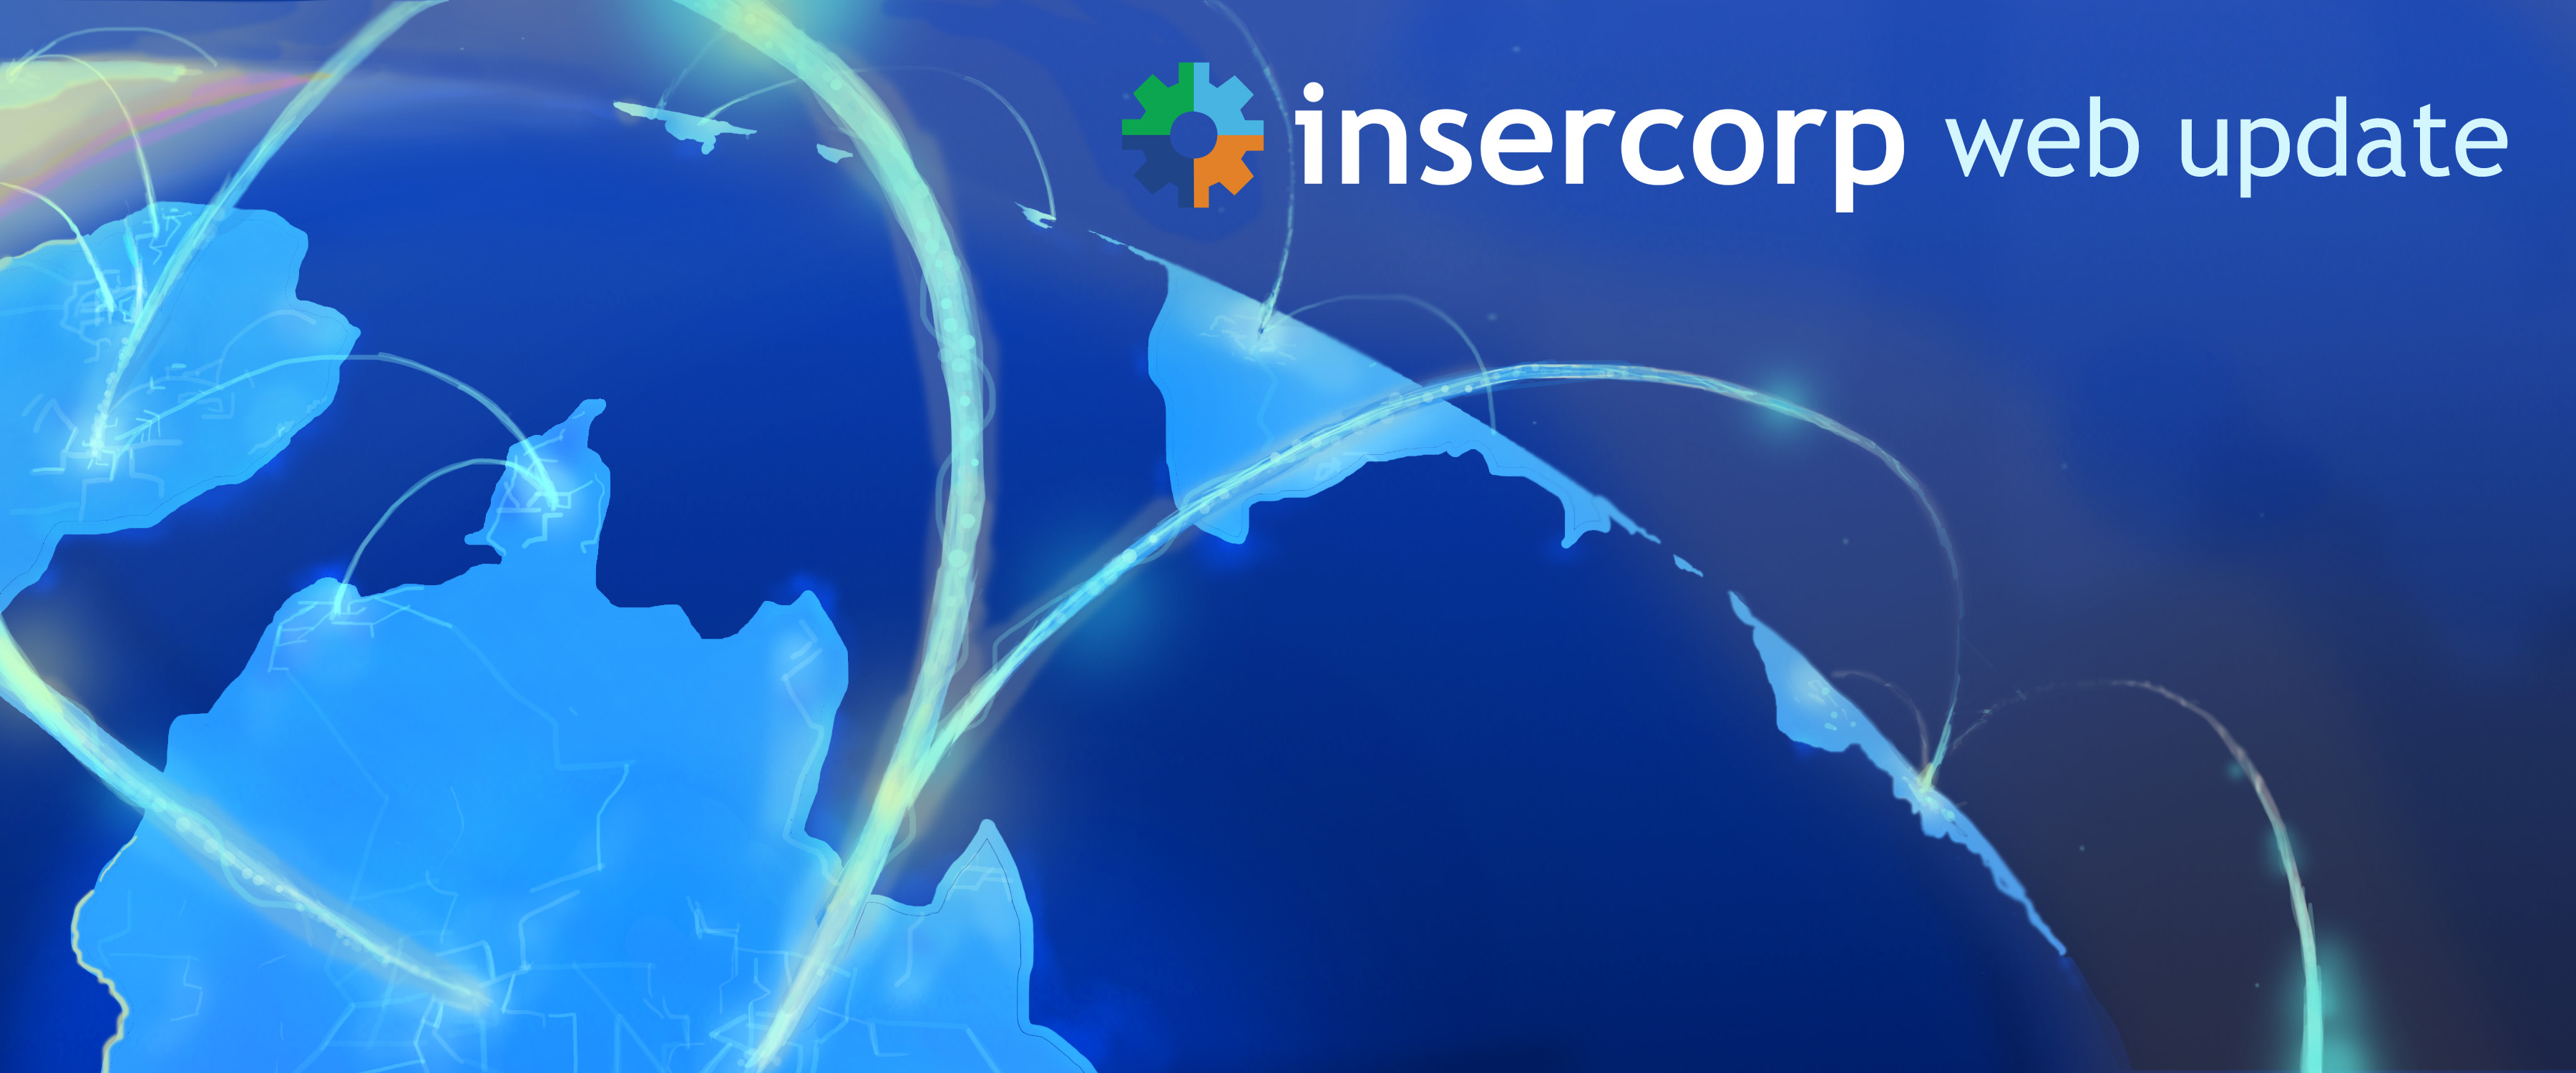 Insercorp Launches CaliHairStudio.com 